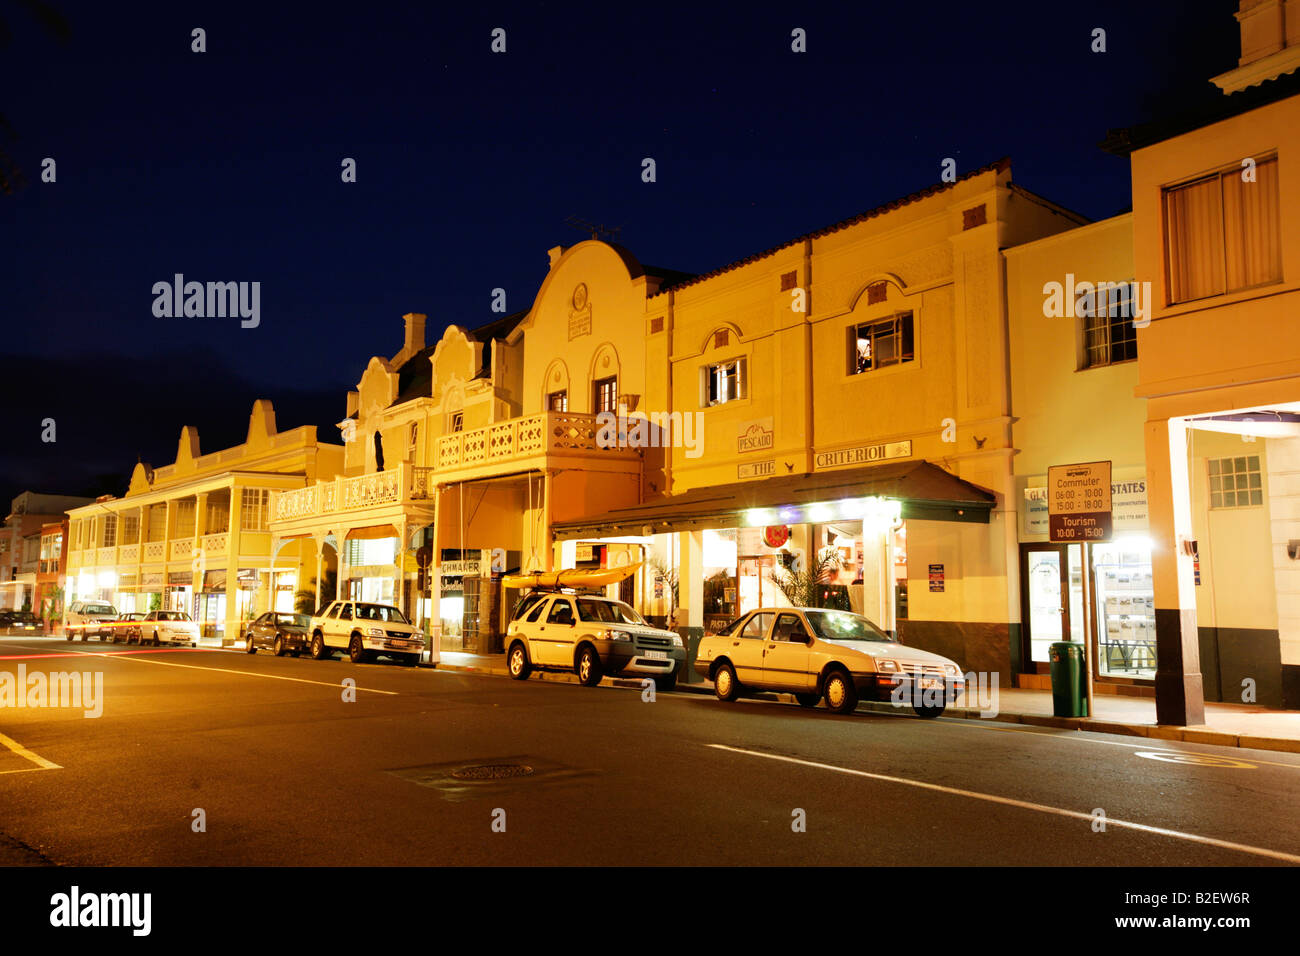 La noche escena callejera de Simonstown. Foto de stock